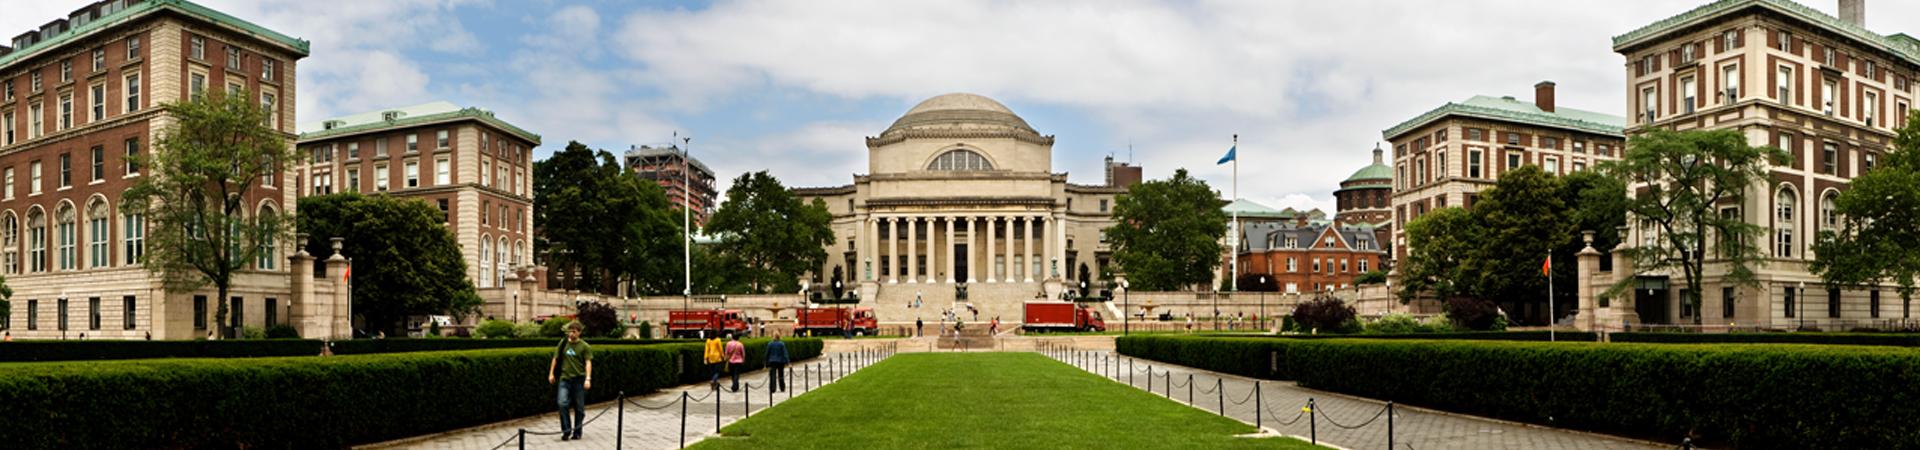 Columbia University Panorama Photo